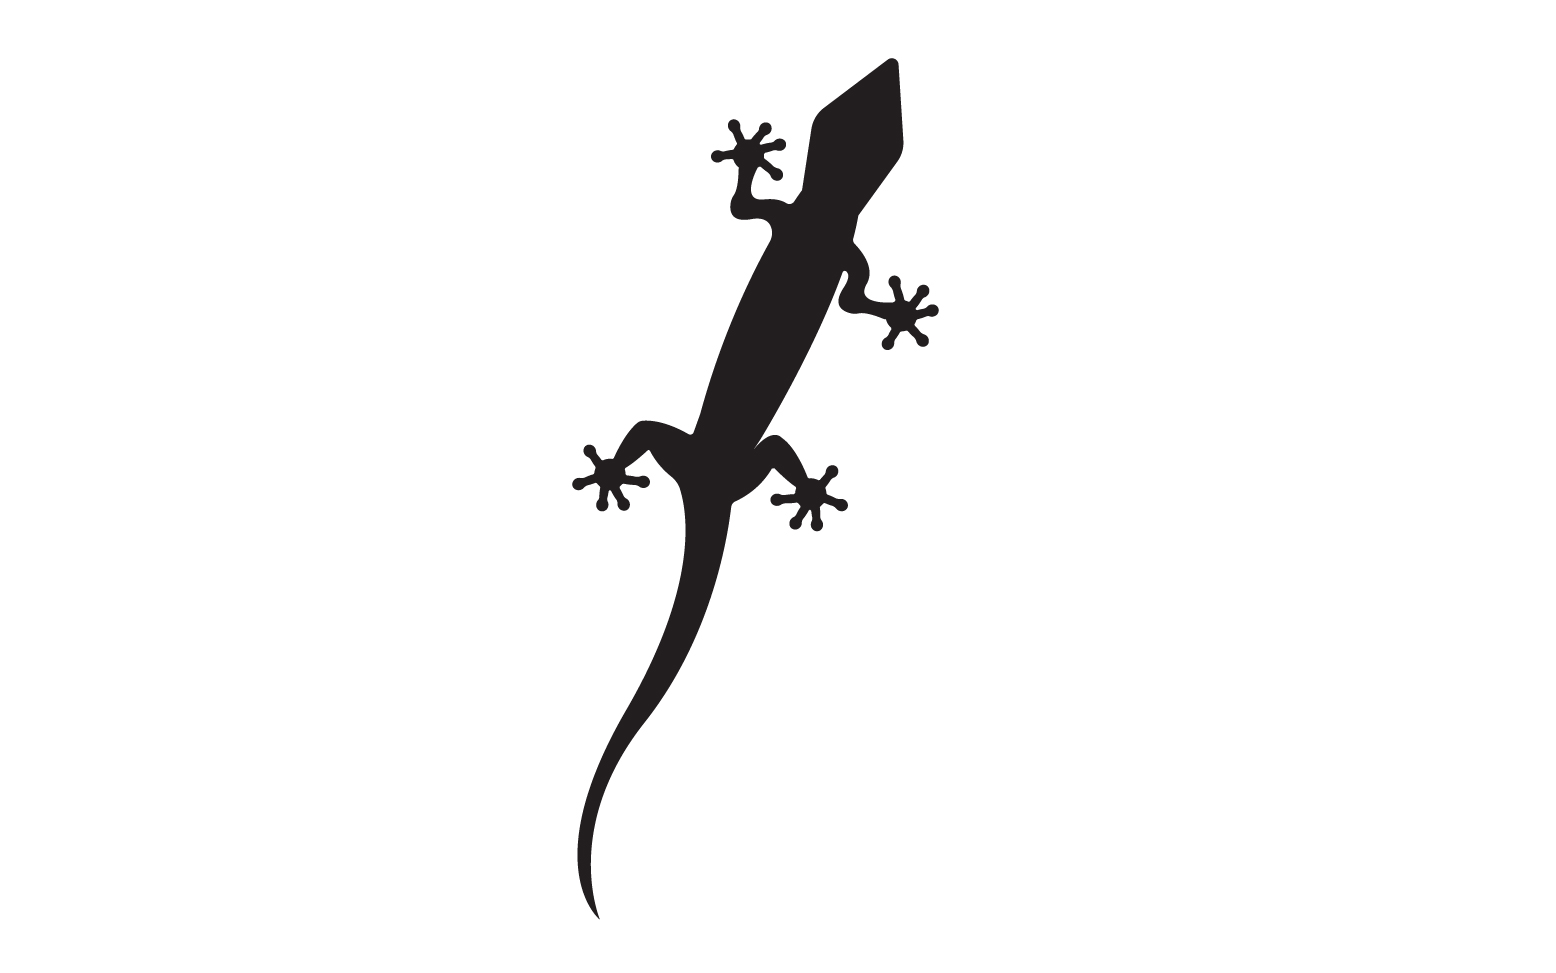 Lizard chameleon home lizard logo v41